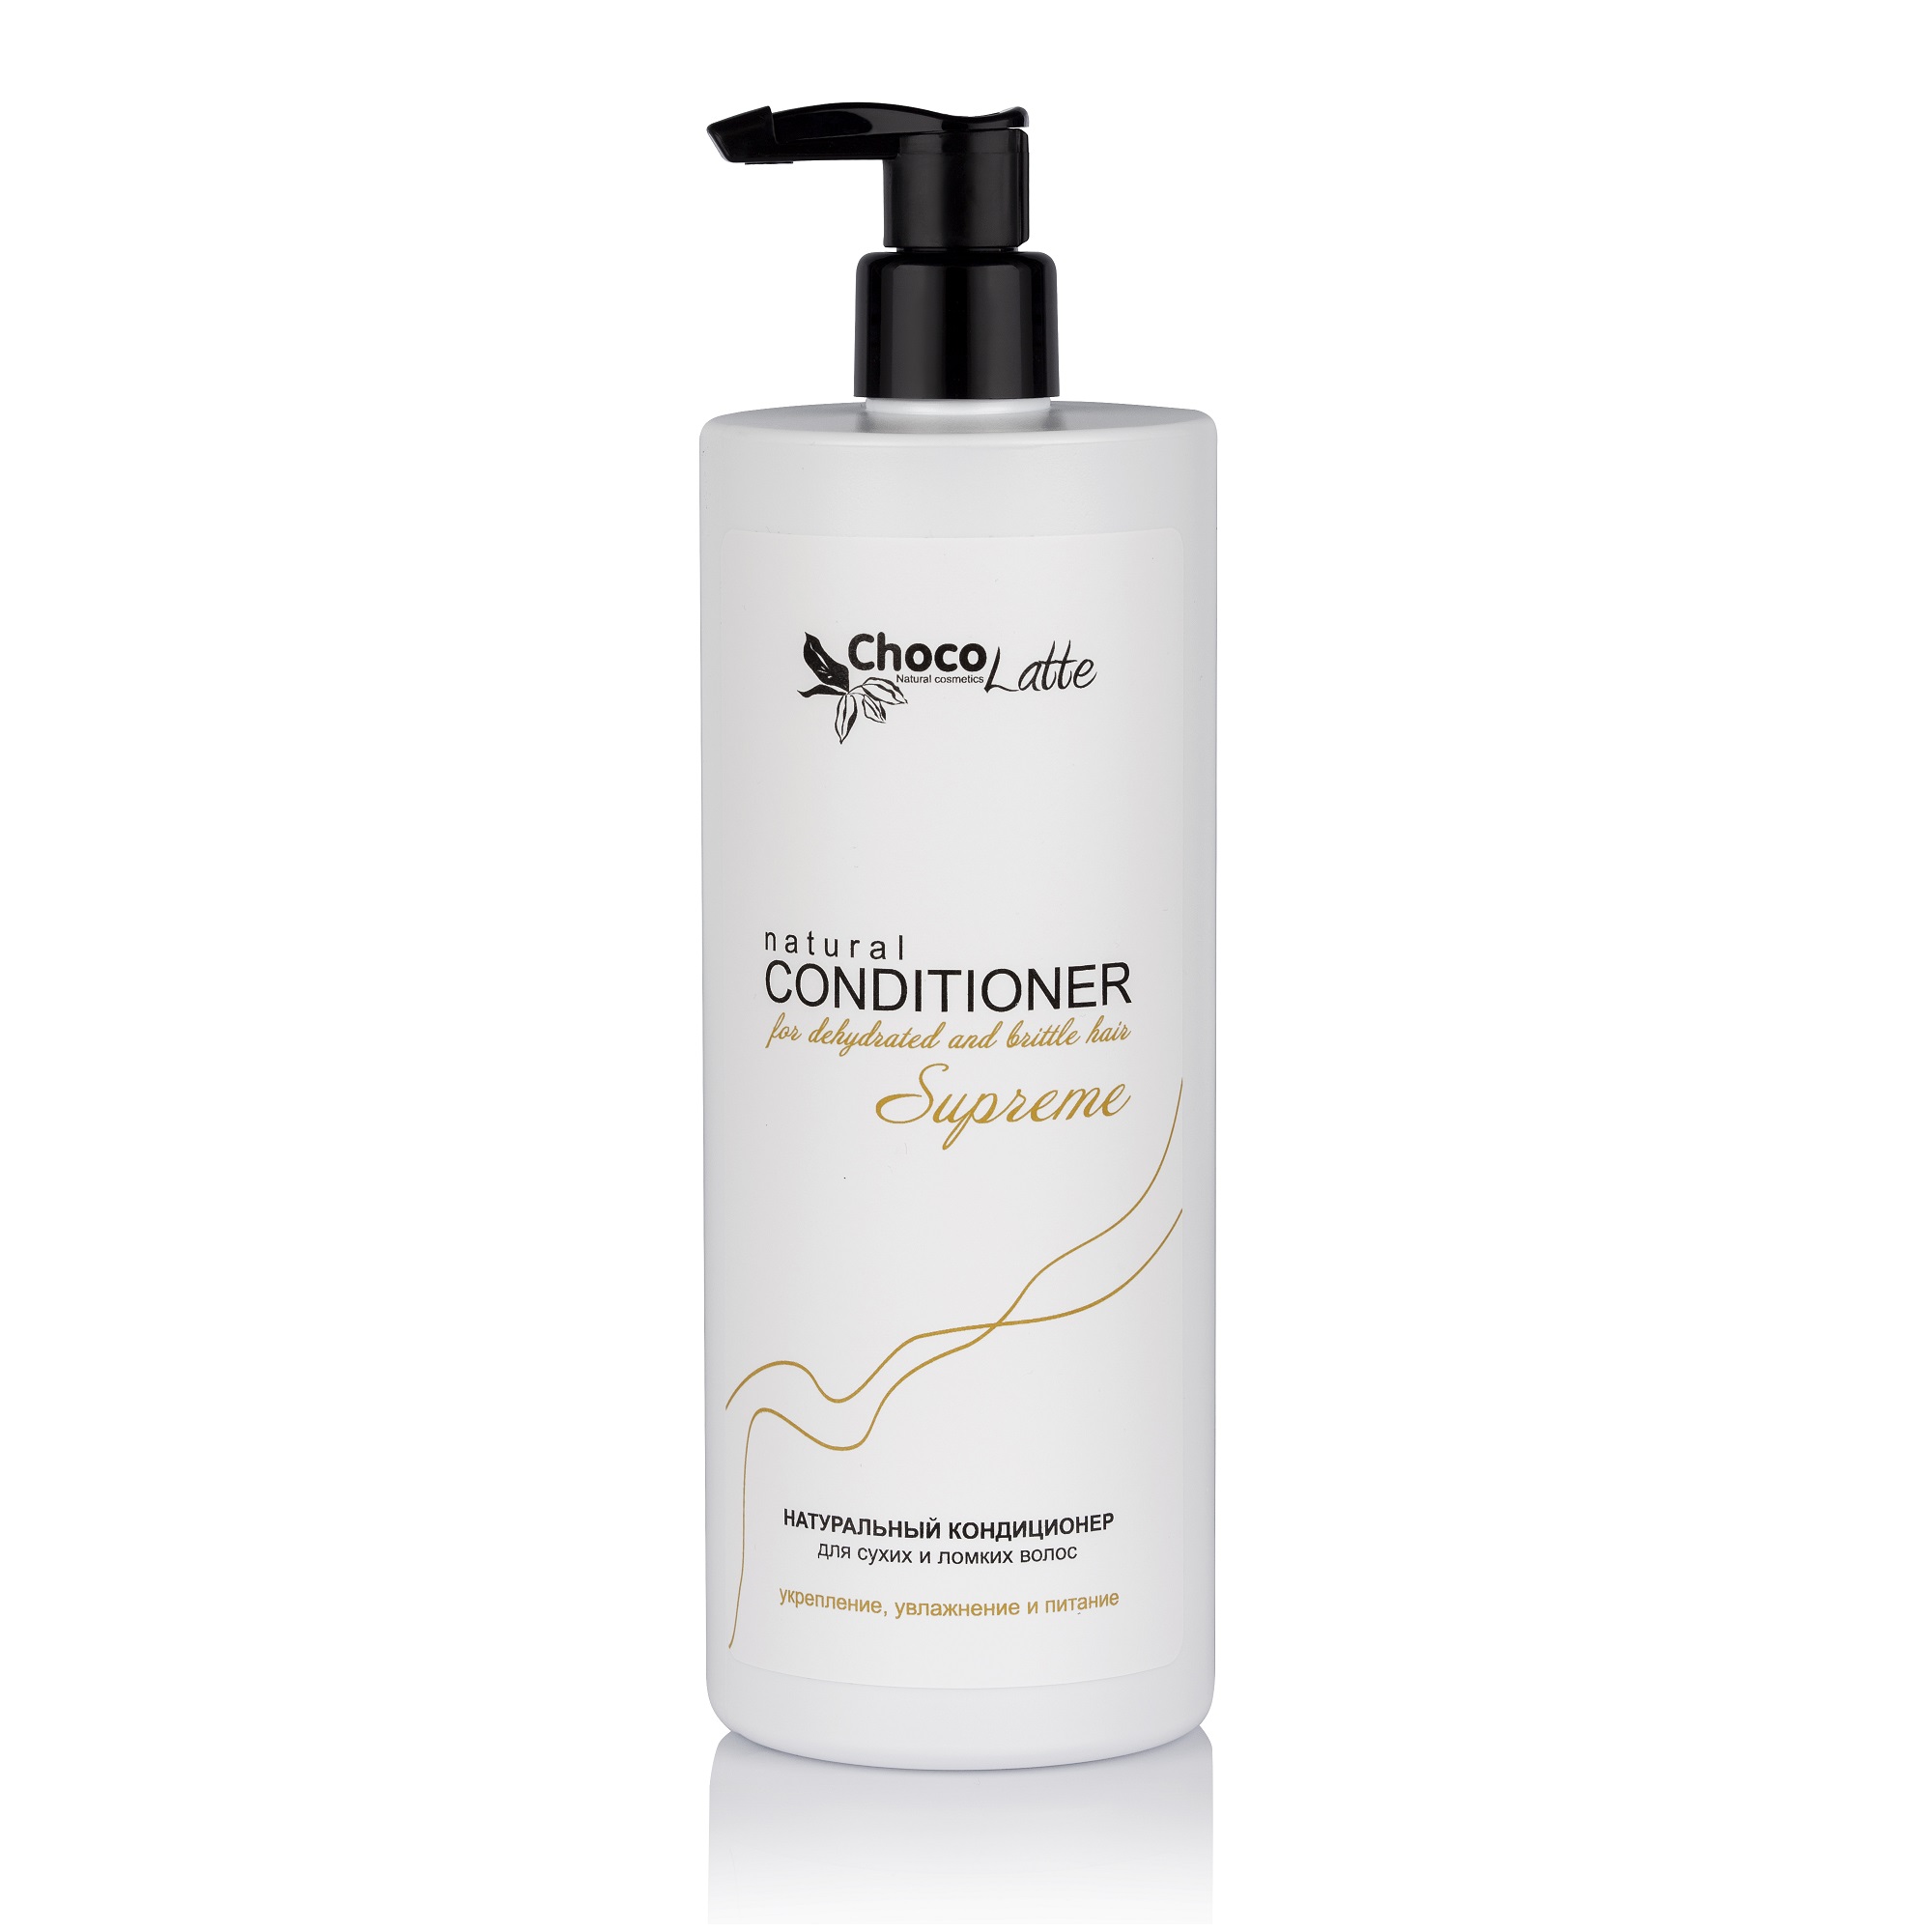 Кондиционер SUPREME натуральный для сухих и ломких волос, укрепление, увлажнение и питание 